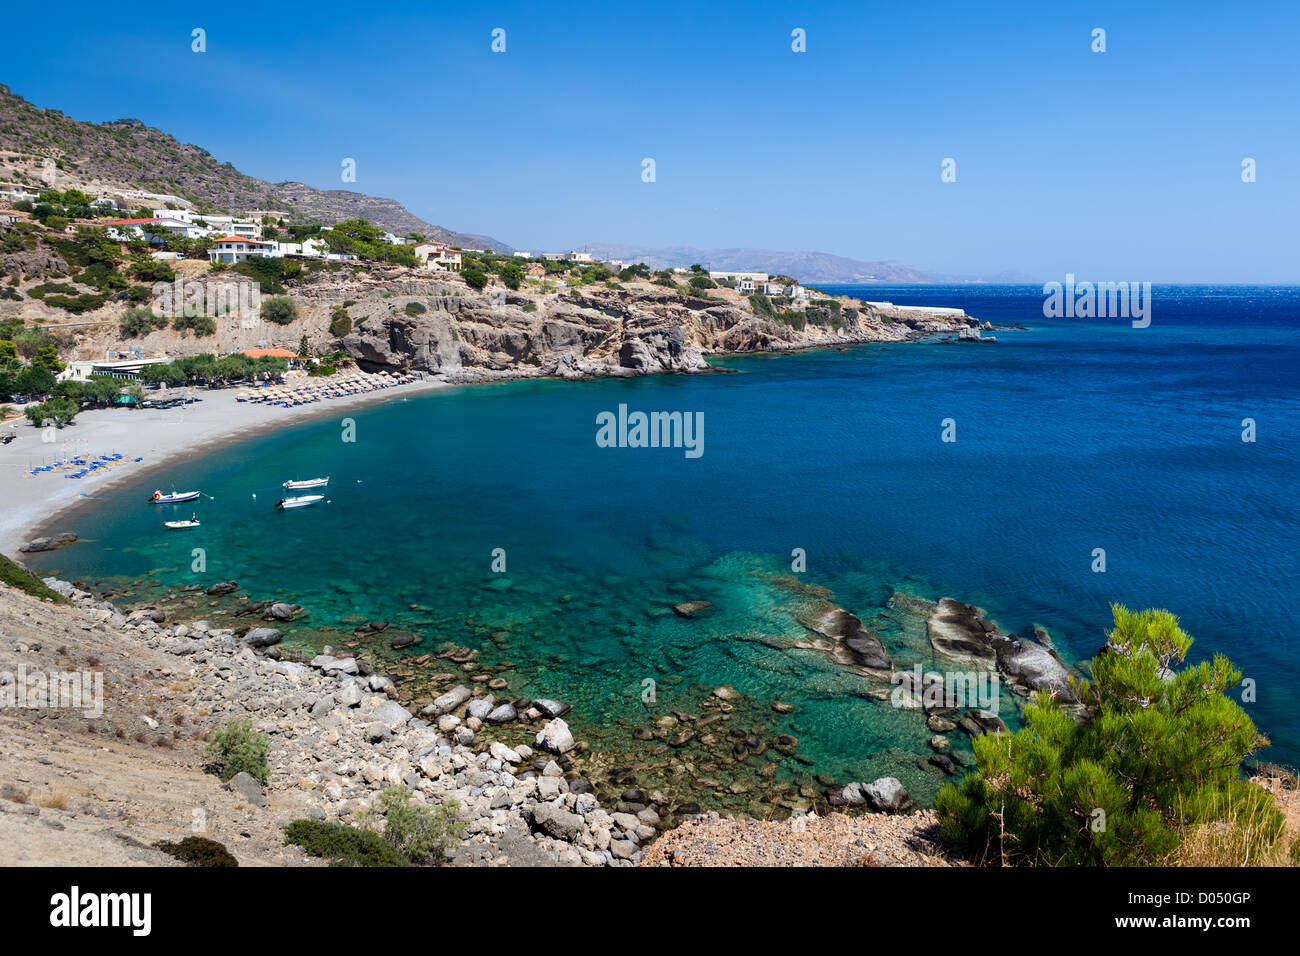 La costa del mare dell'isola di Creta da mar Libico Foto Stock